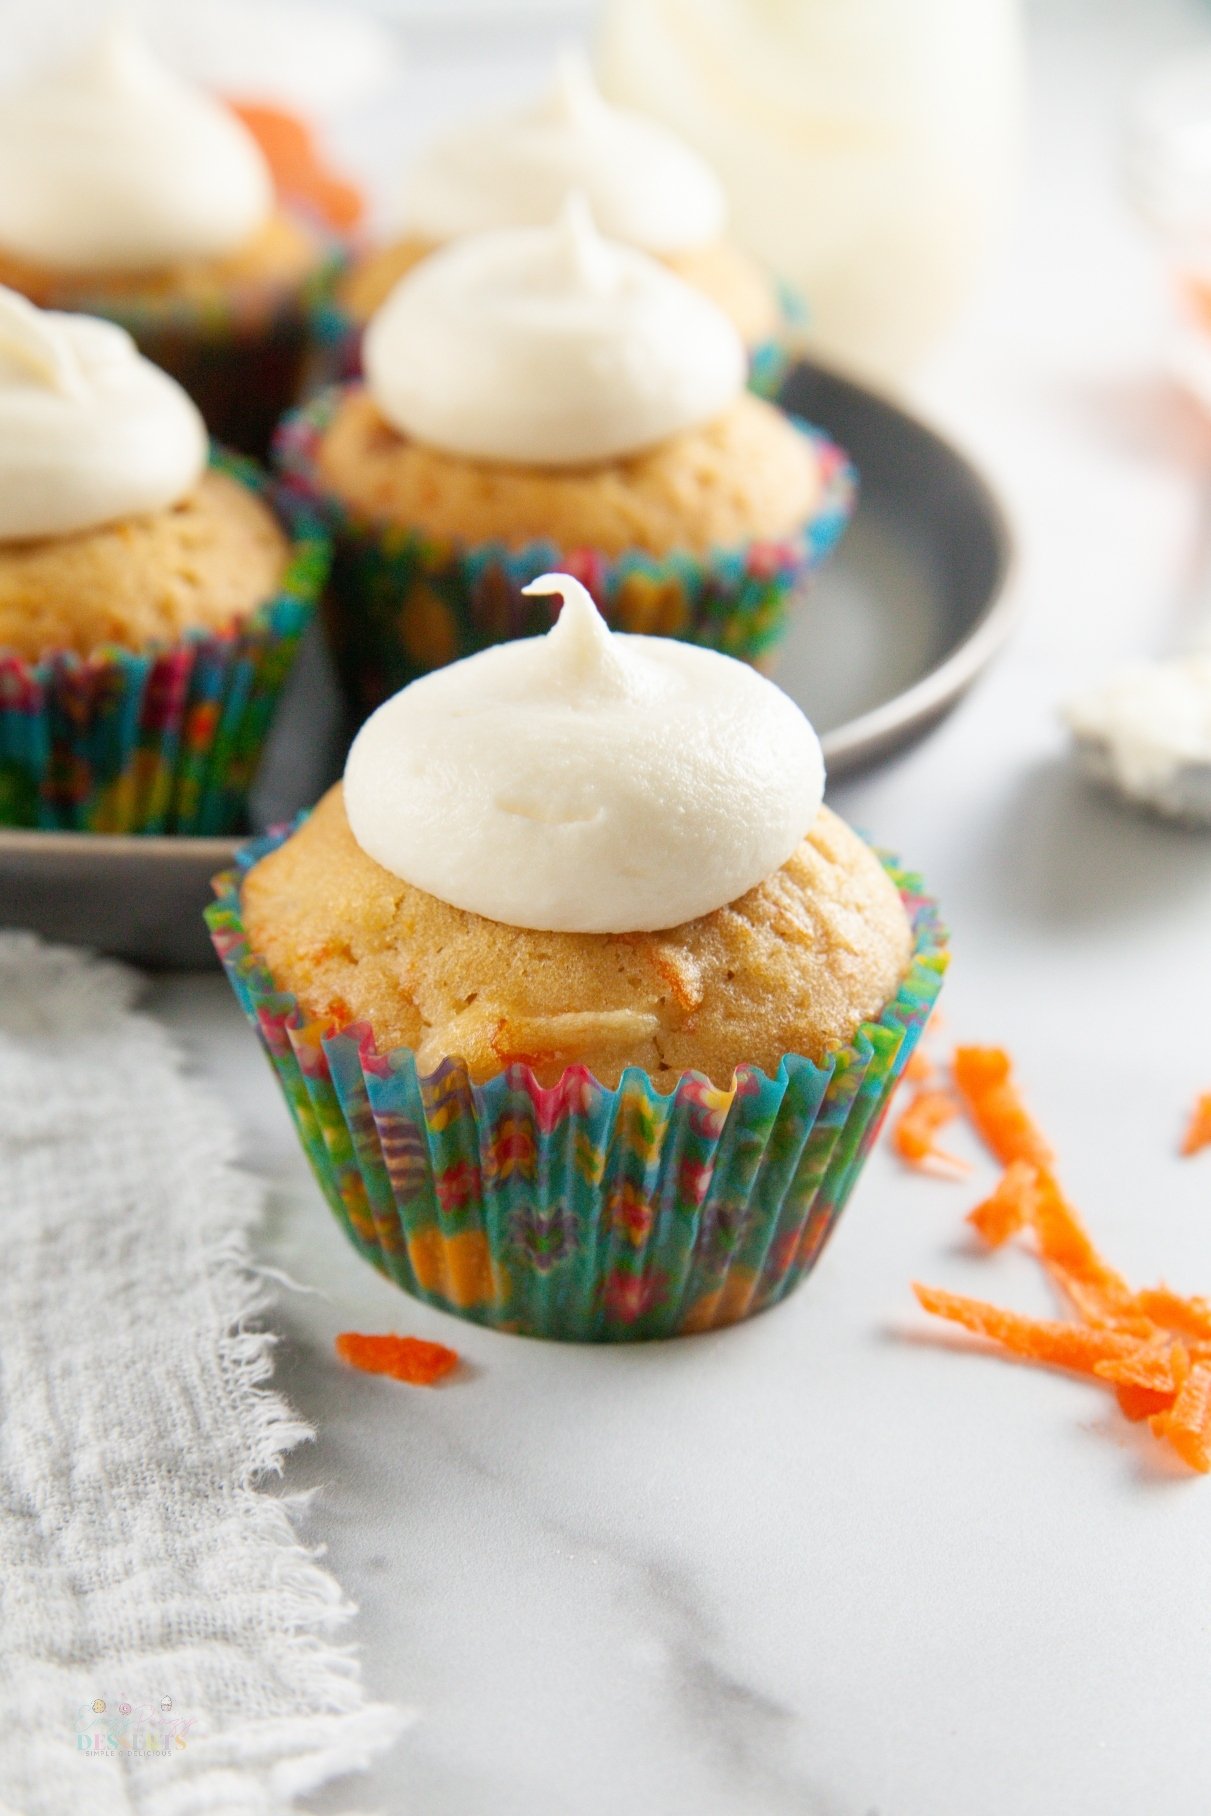 Homemade carrot cake cupcakes